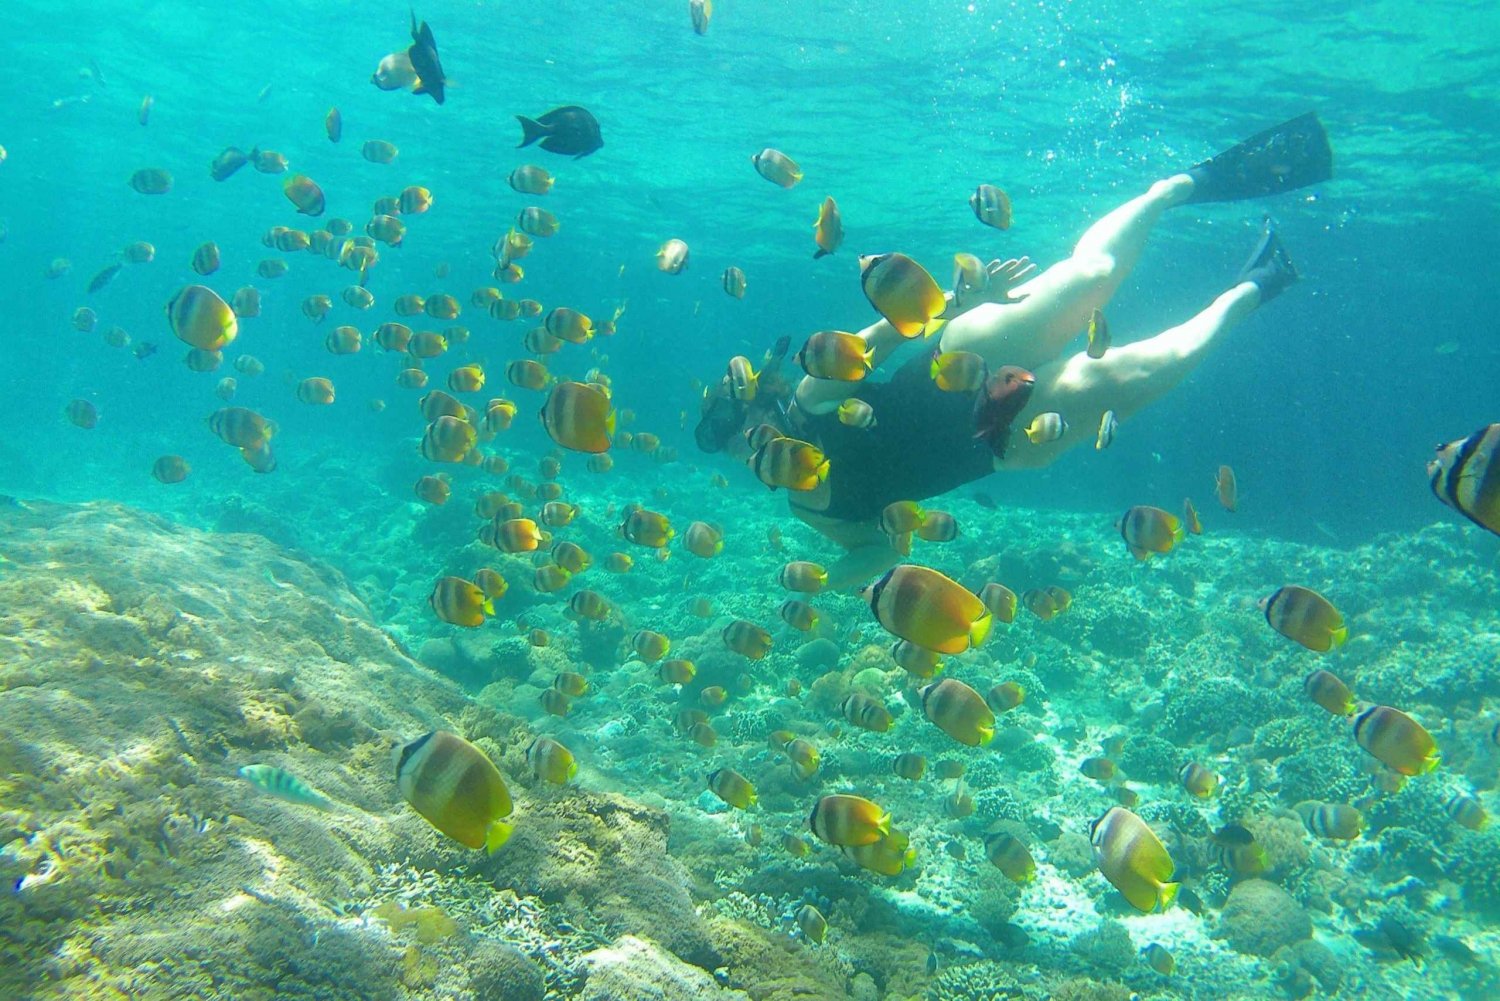 Excursión de snorkel con Manta: Explora 4 lugares favoritos para hacer snorkel